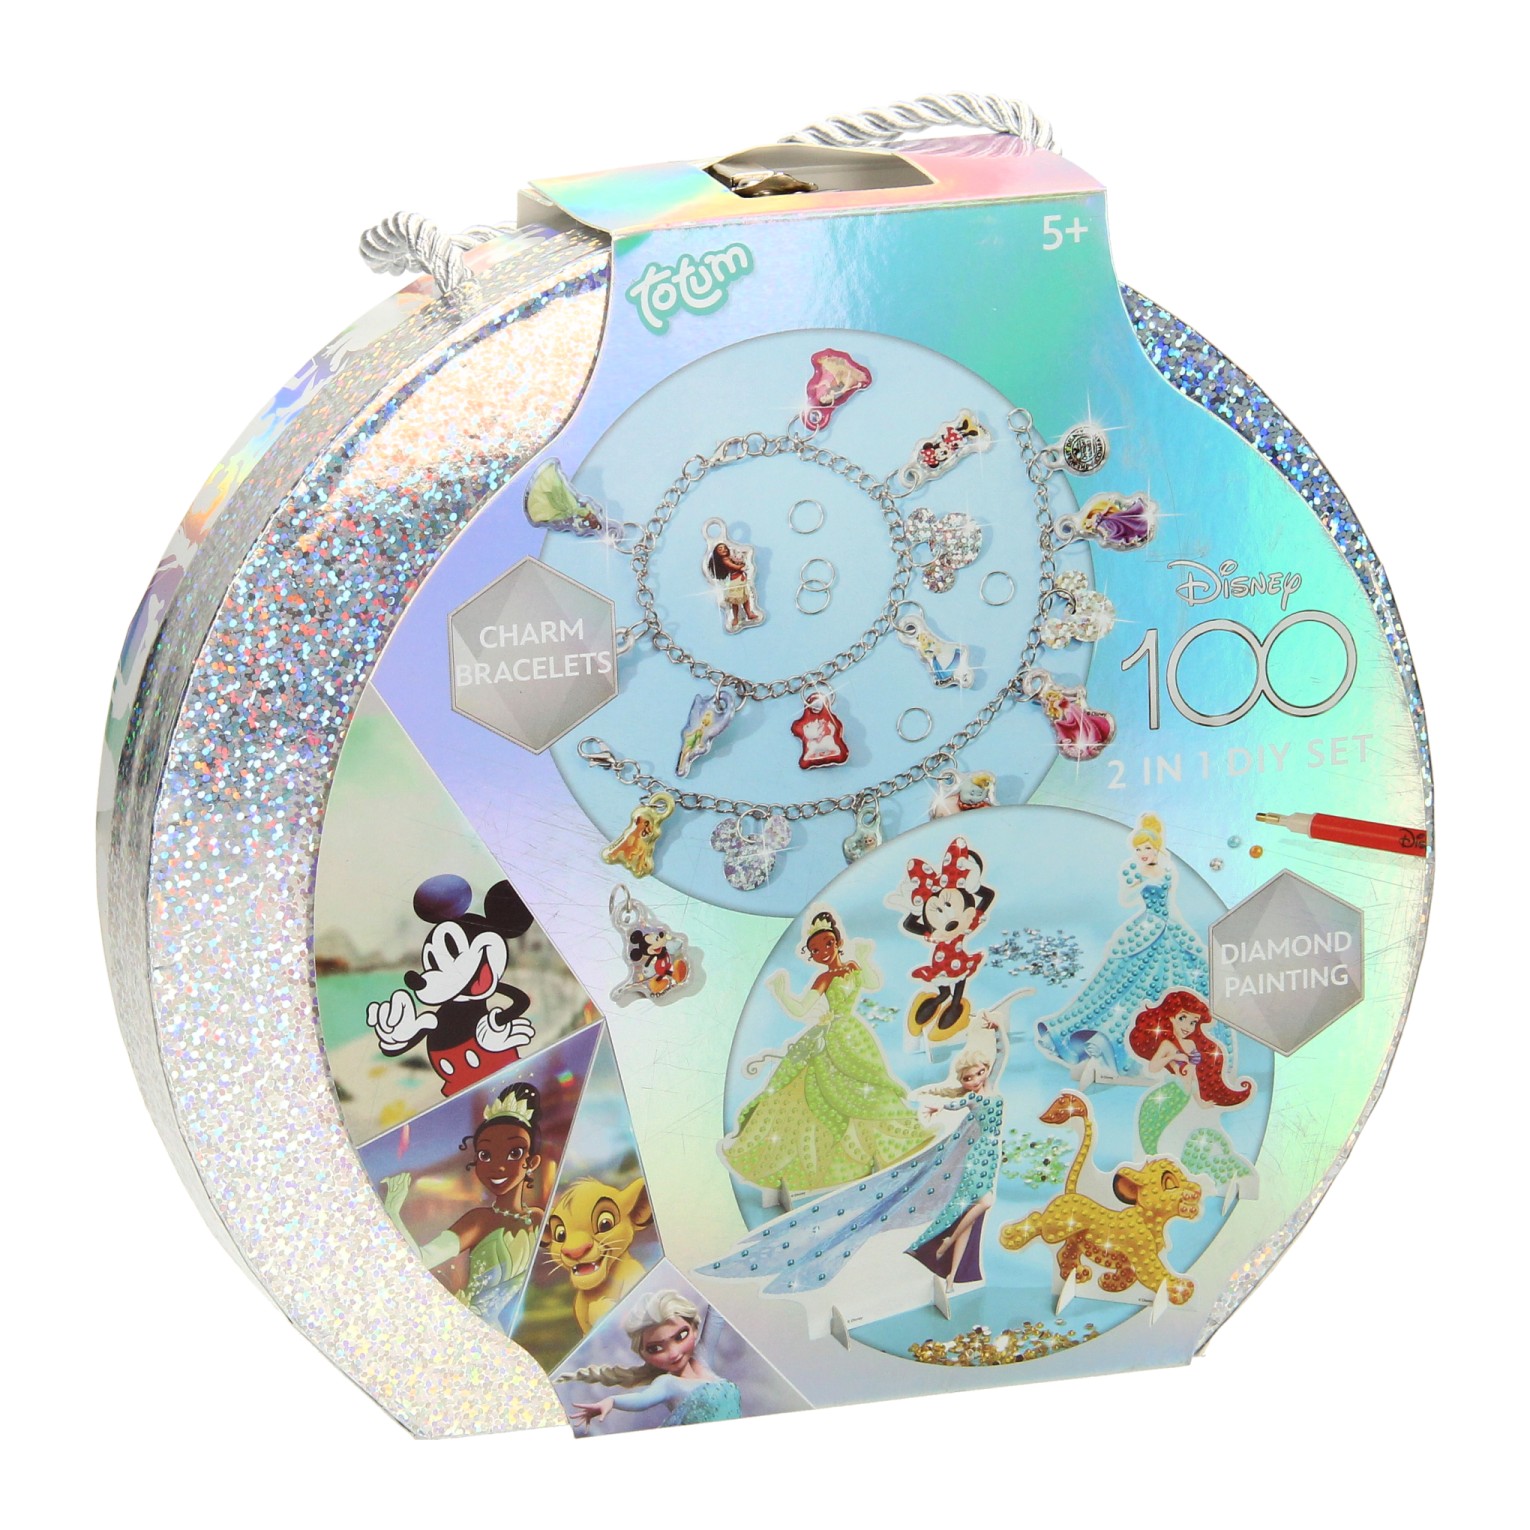 Disney 100 Bastelkoffer 2in1 – Armbandherstellung und Diamantmalerei